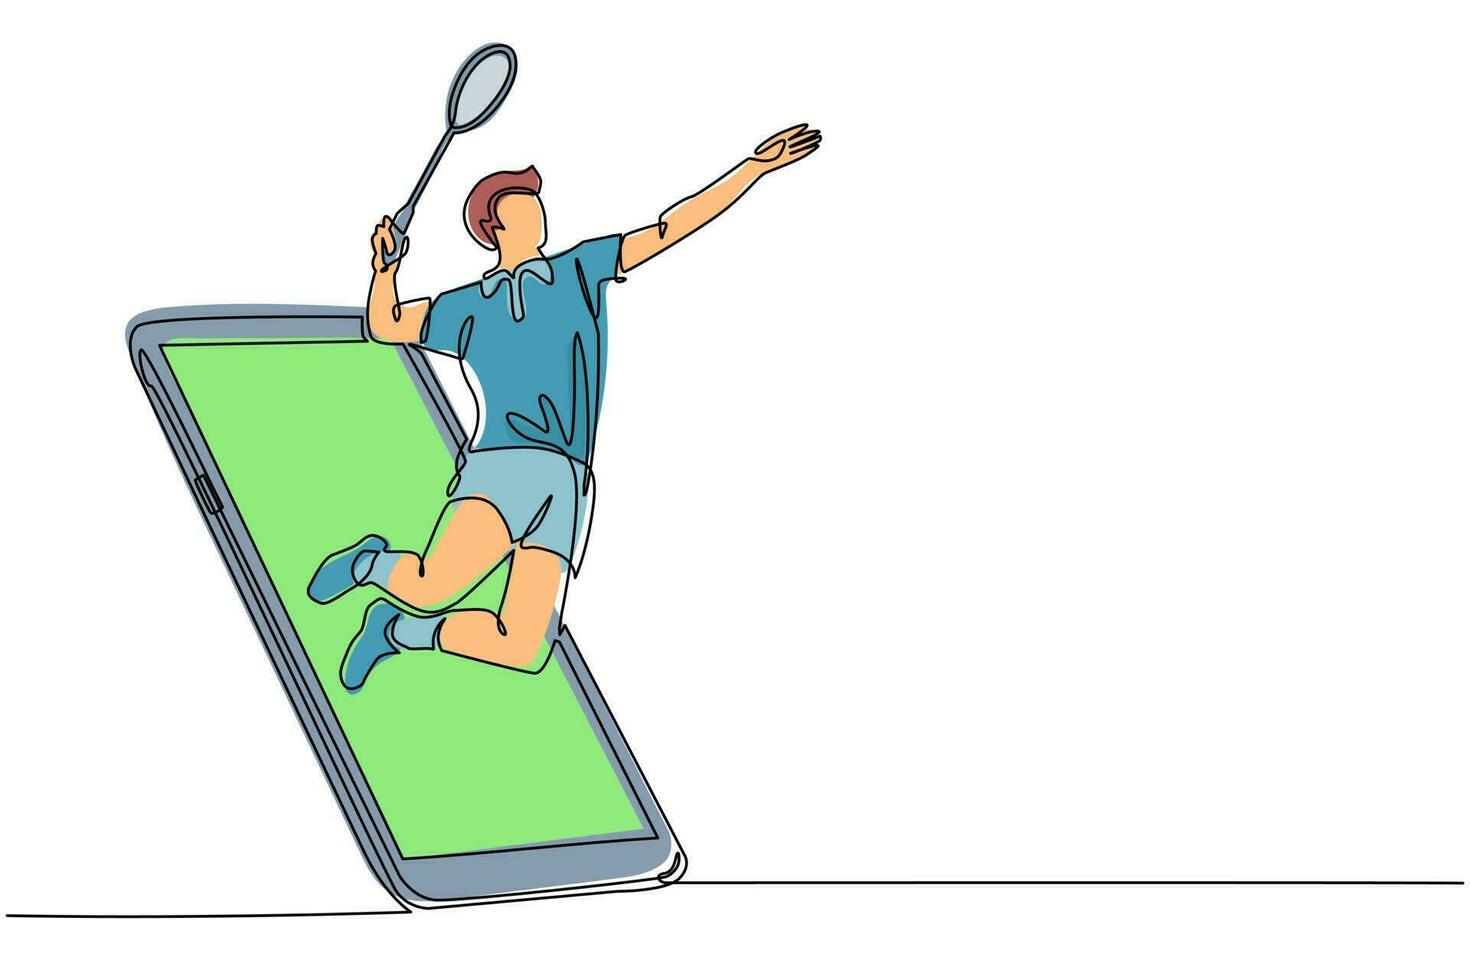 singolo disegno a tratteggio uomo giocatore di badminton salto colpito volano uscendo dallo schermo dello smartphone. gioco di badminton online con app mobile dal vivo. illustrazione vettoriale grafica di disegno a linea continua